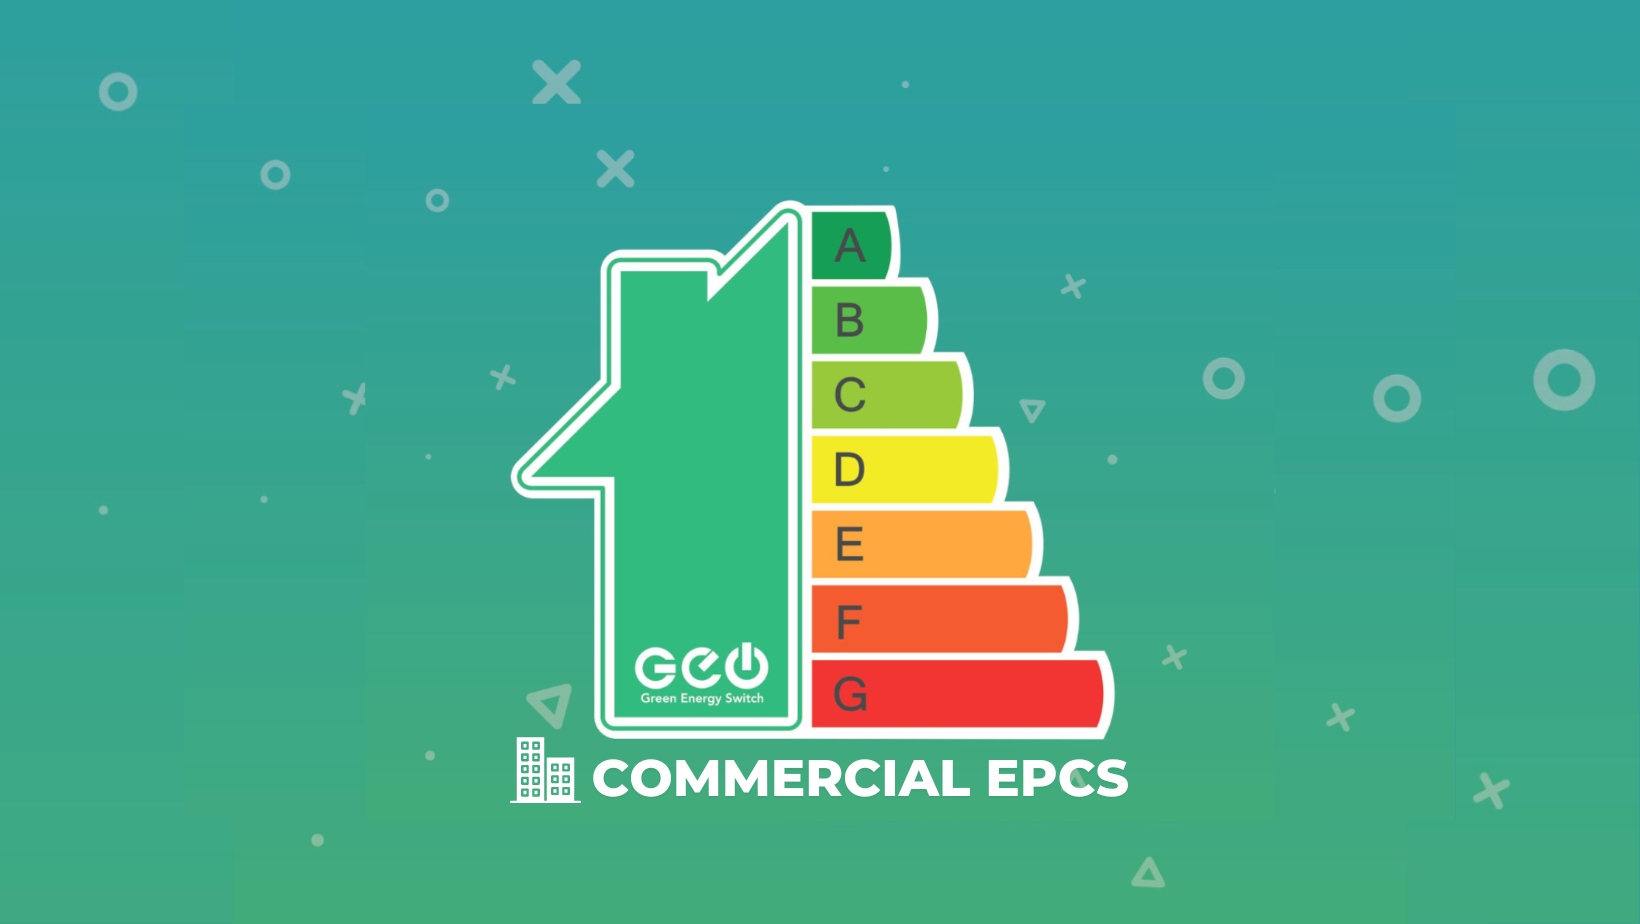 Commercial EPCs